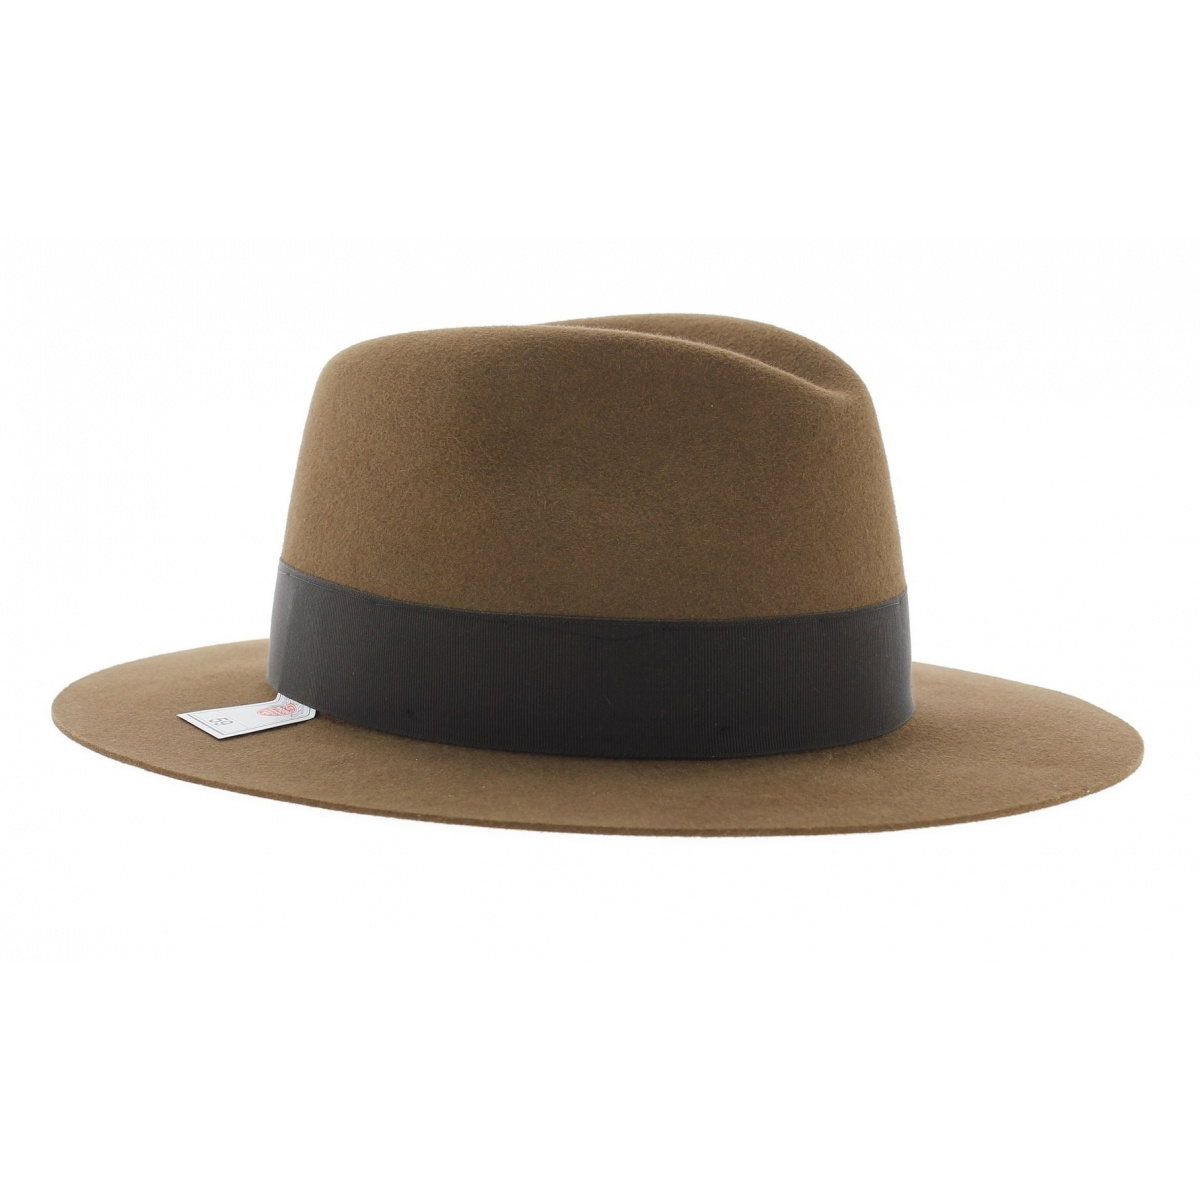 Ça laisse songeur: Le chapeau d'Indiana Jones s'arrache aux